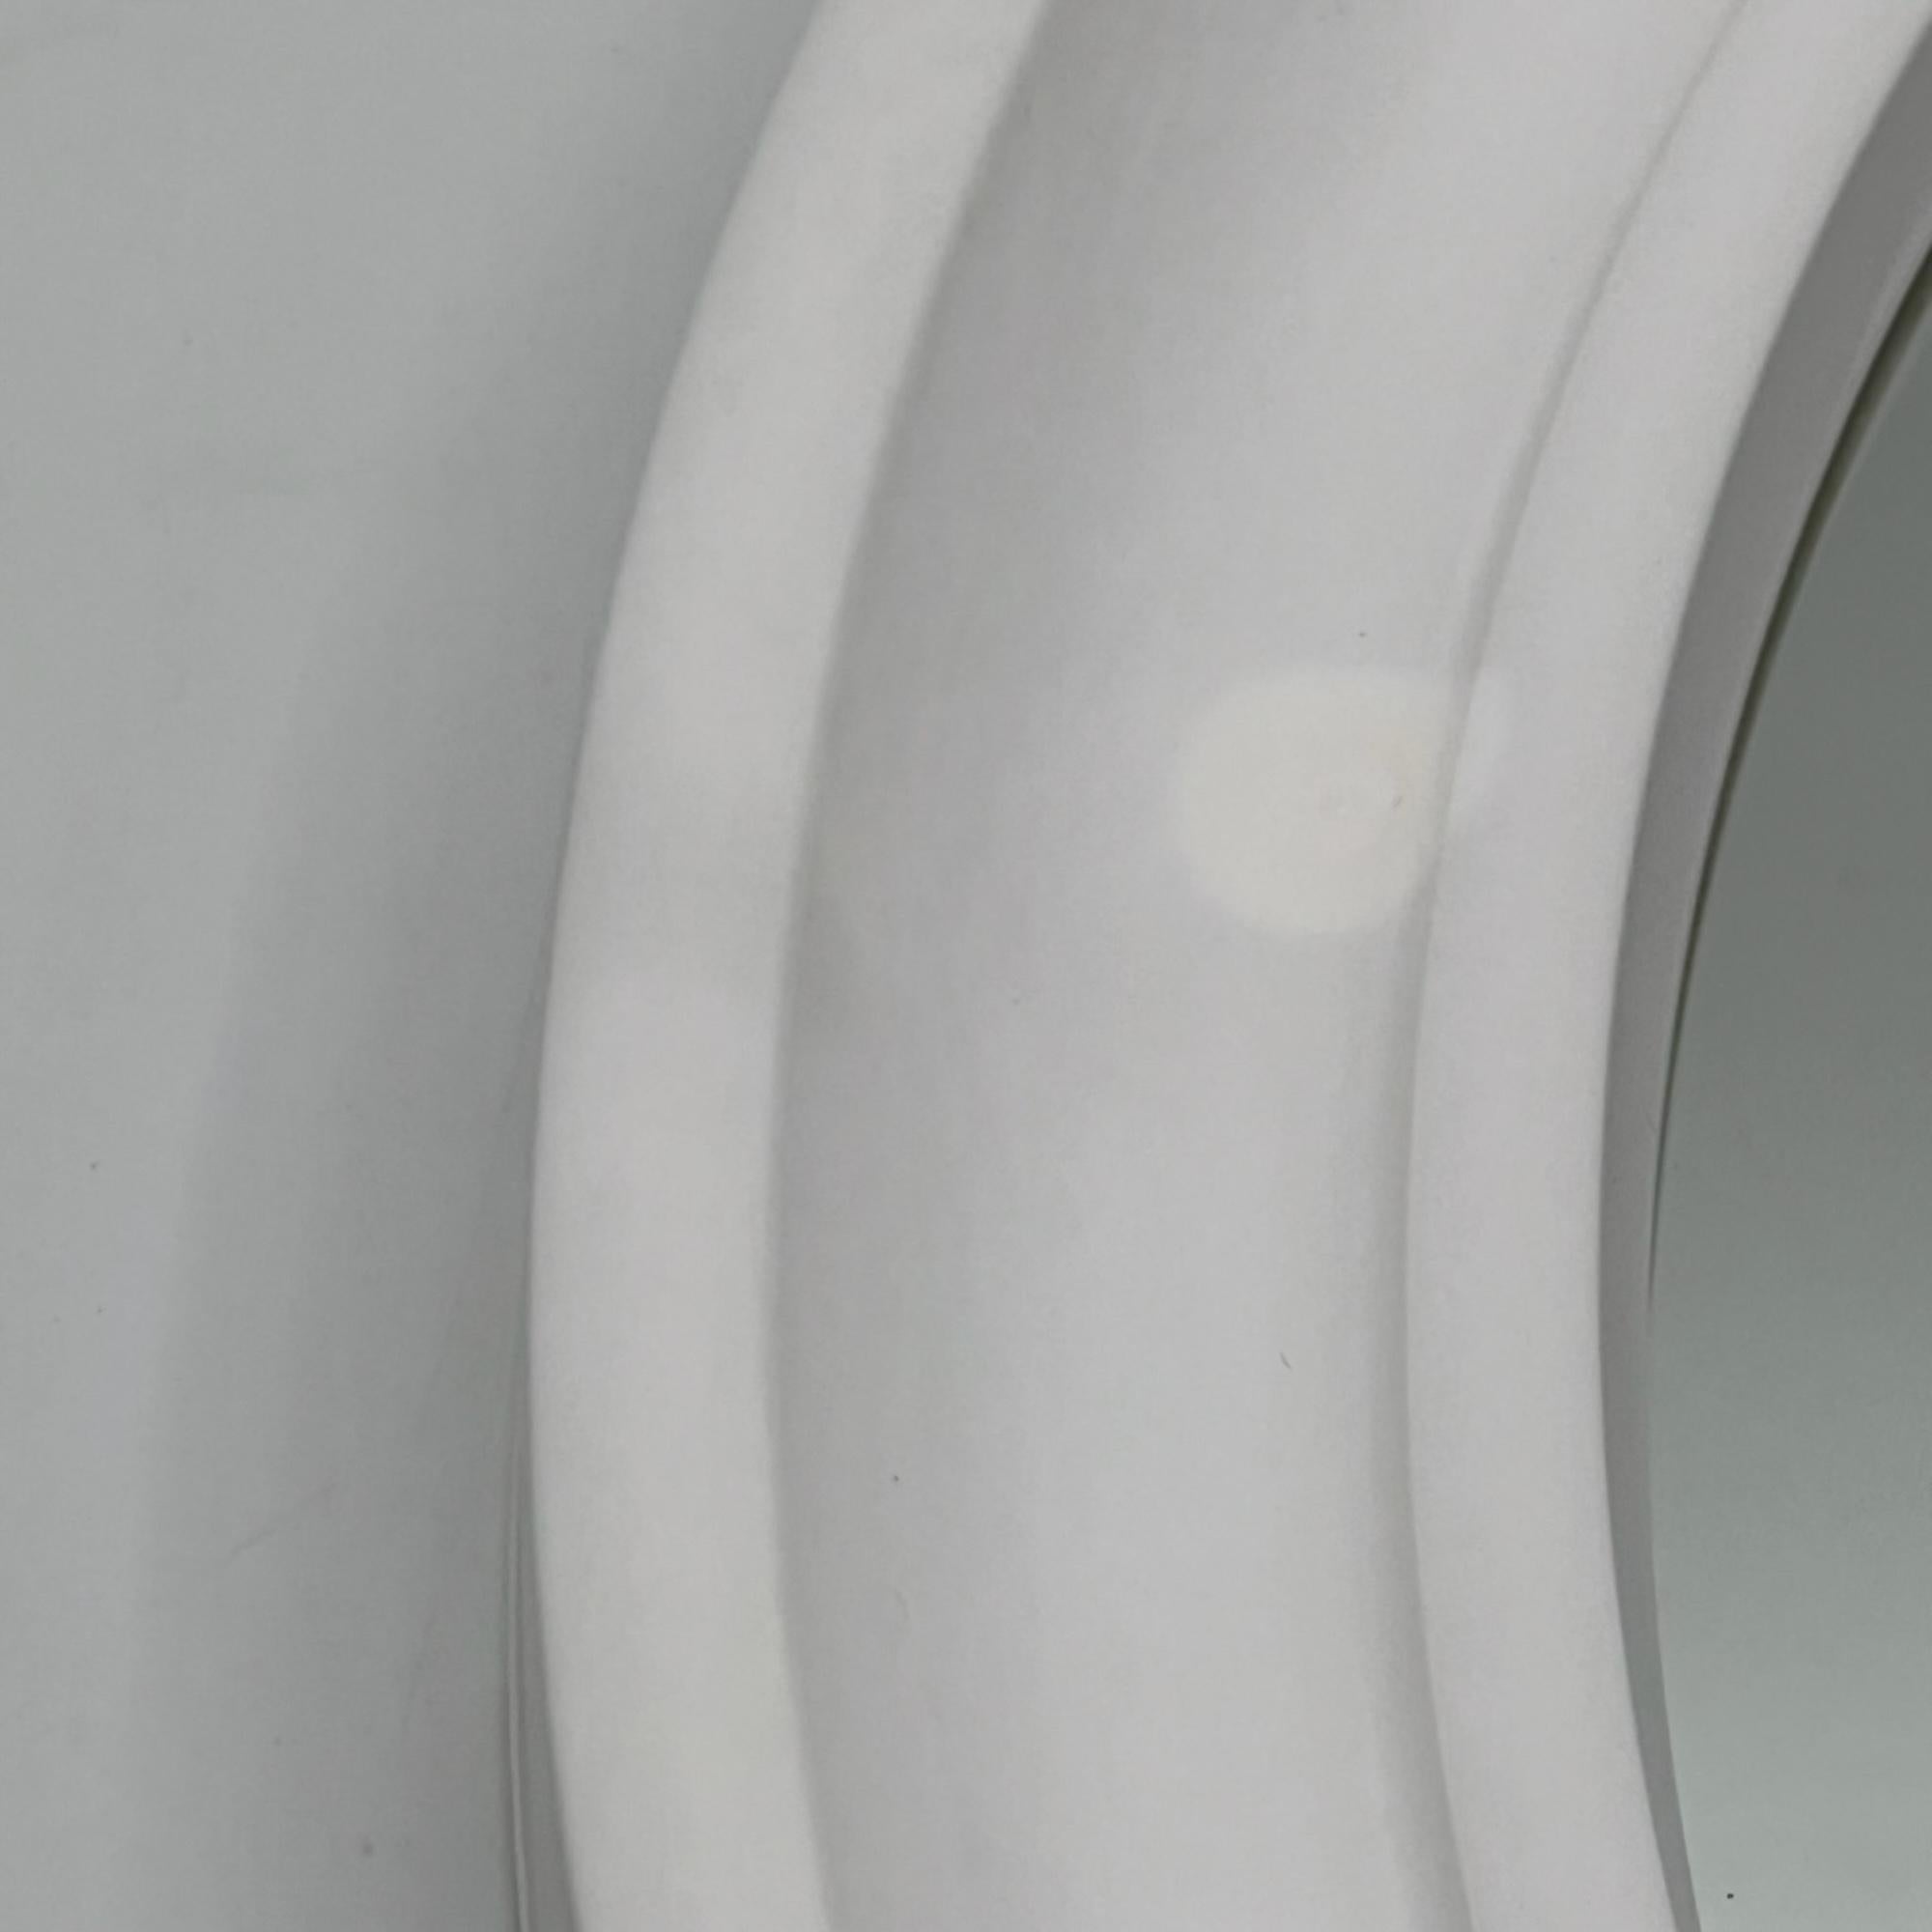 Carrara & Matta 'America' Wall Mirror in off-white - 70s Patent Bakelite Design 2